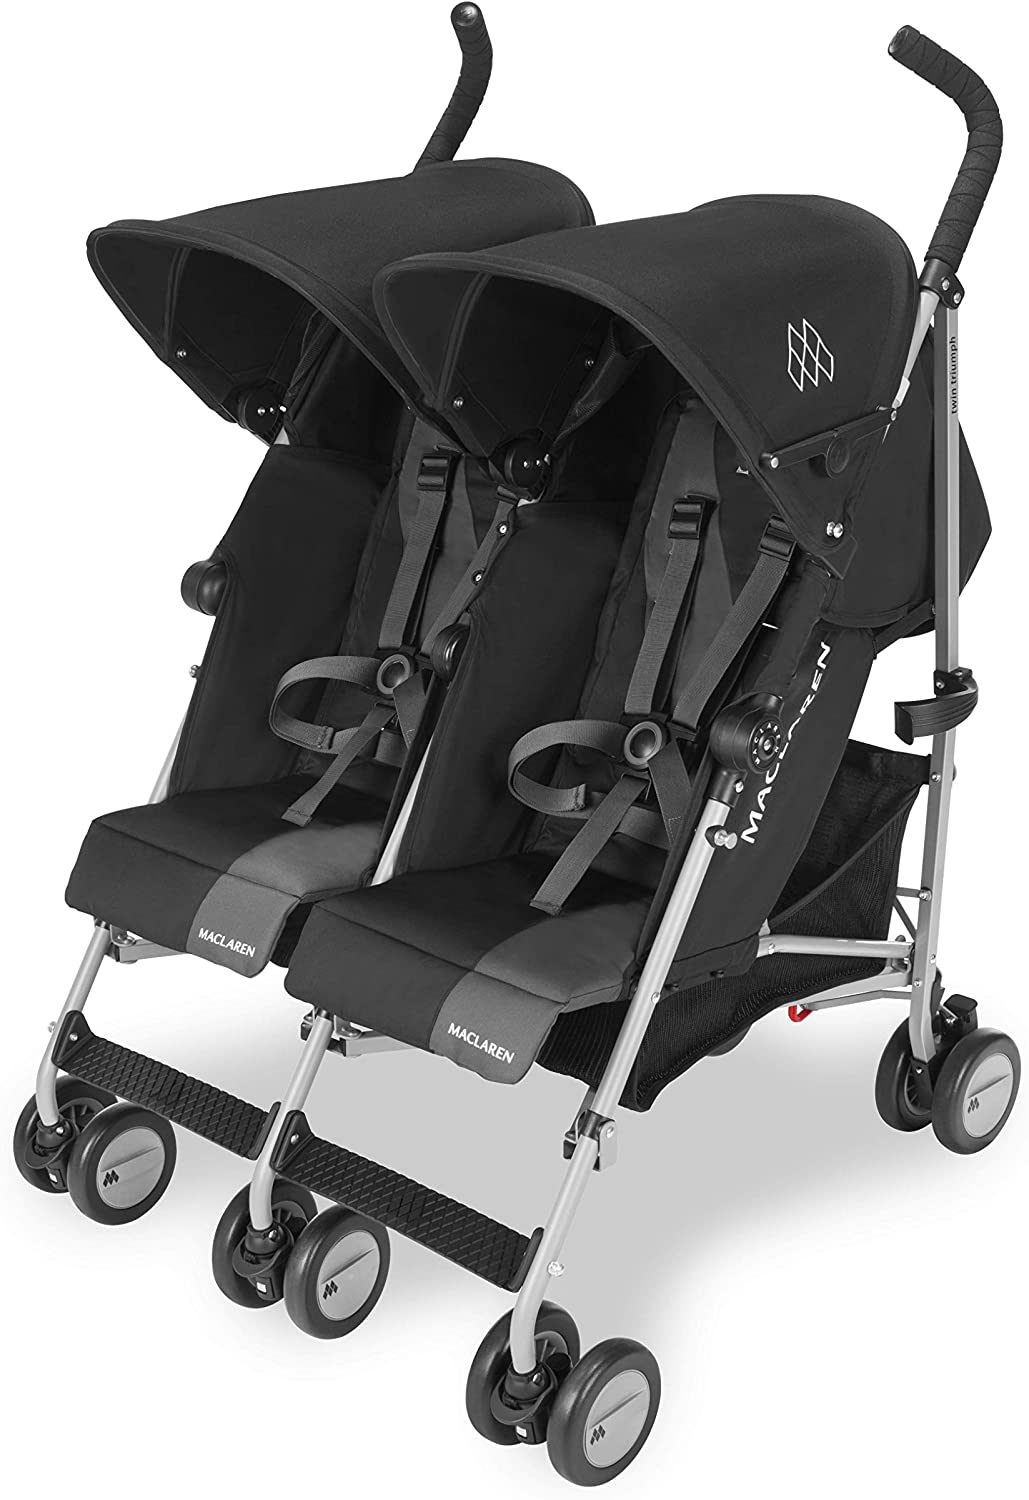 chollo Maclaren Twin Triumph silla de paseo ligera y compacta para niños a partir de 6 meses hasta 15 kg en cada asiento